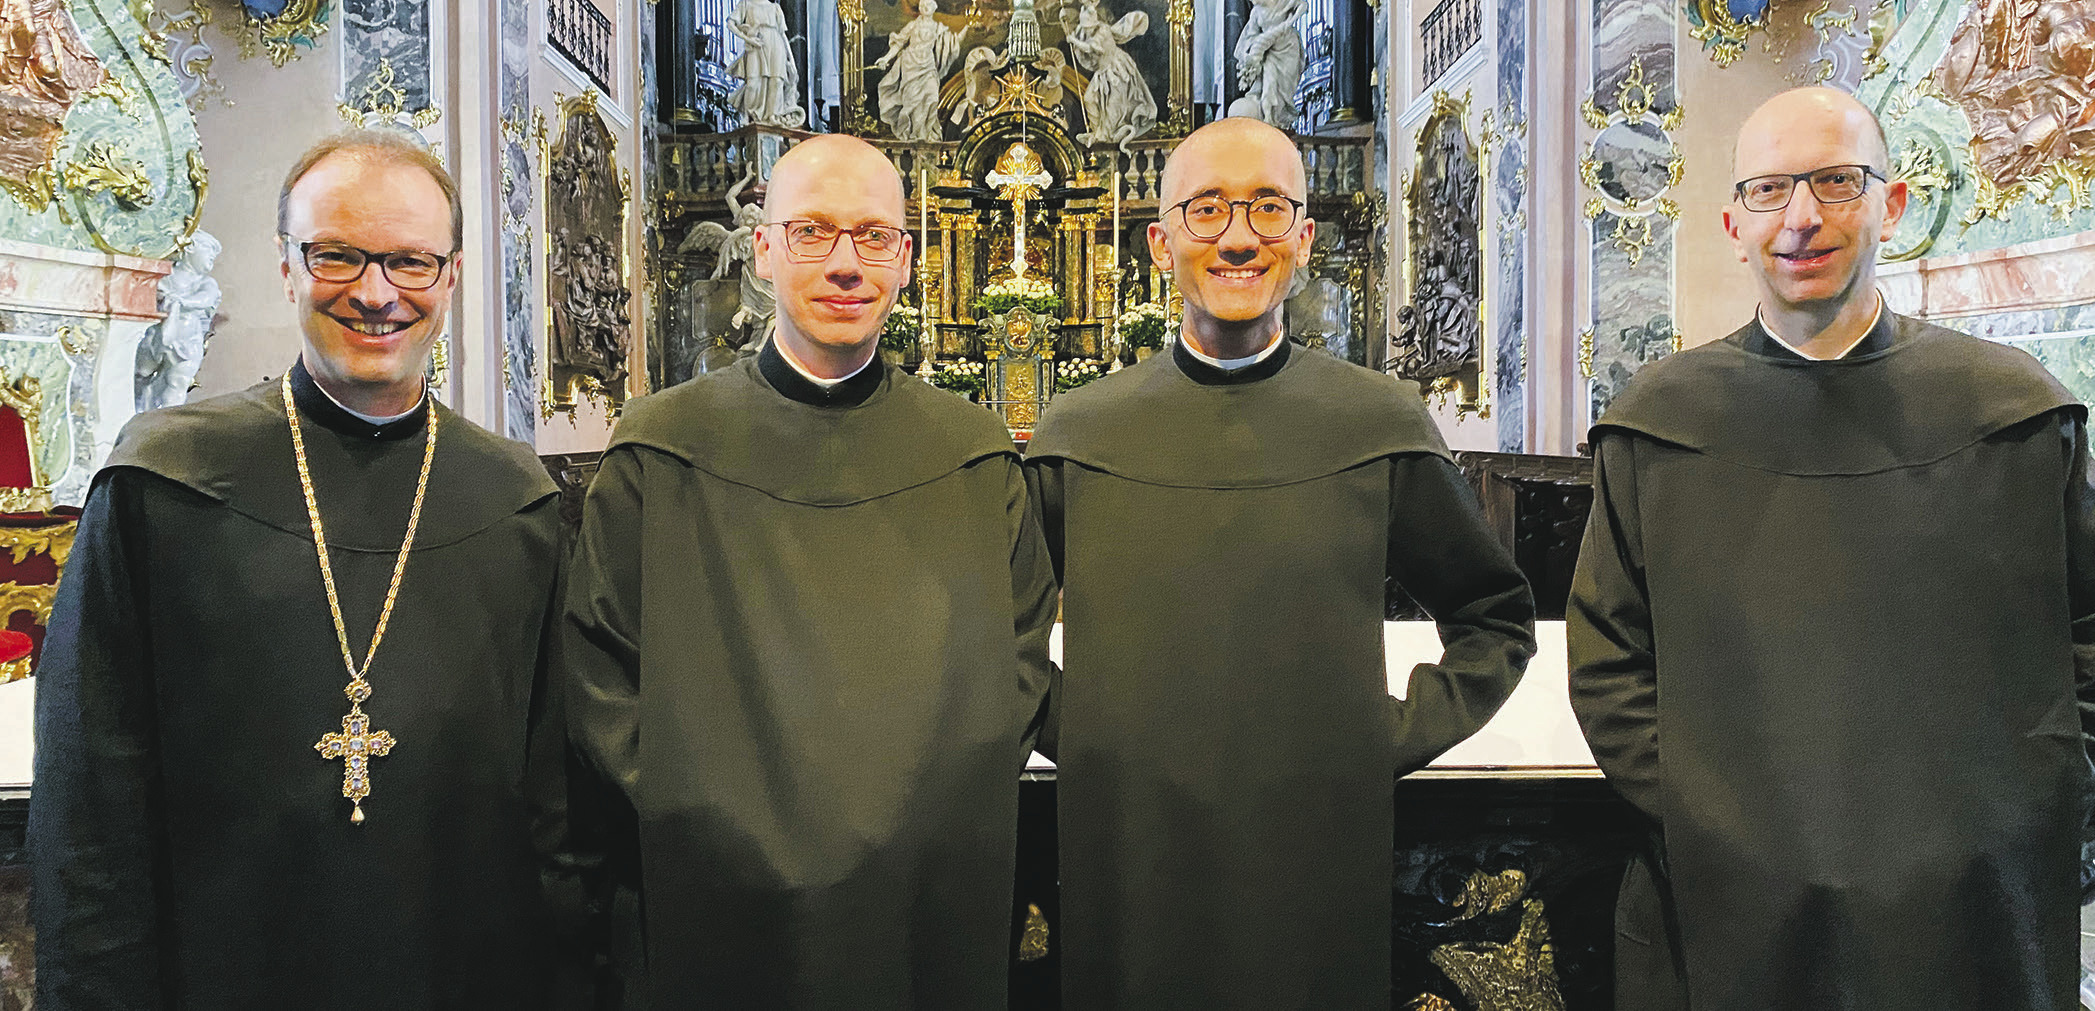 Grosse Freude im Kloster über zwei neue Mönche